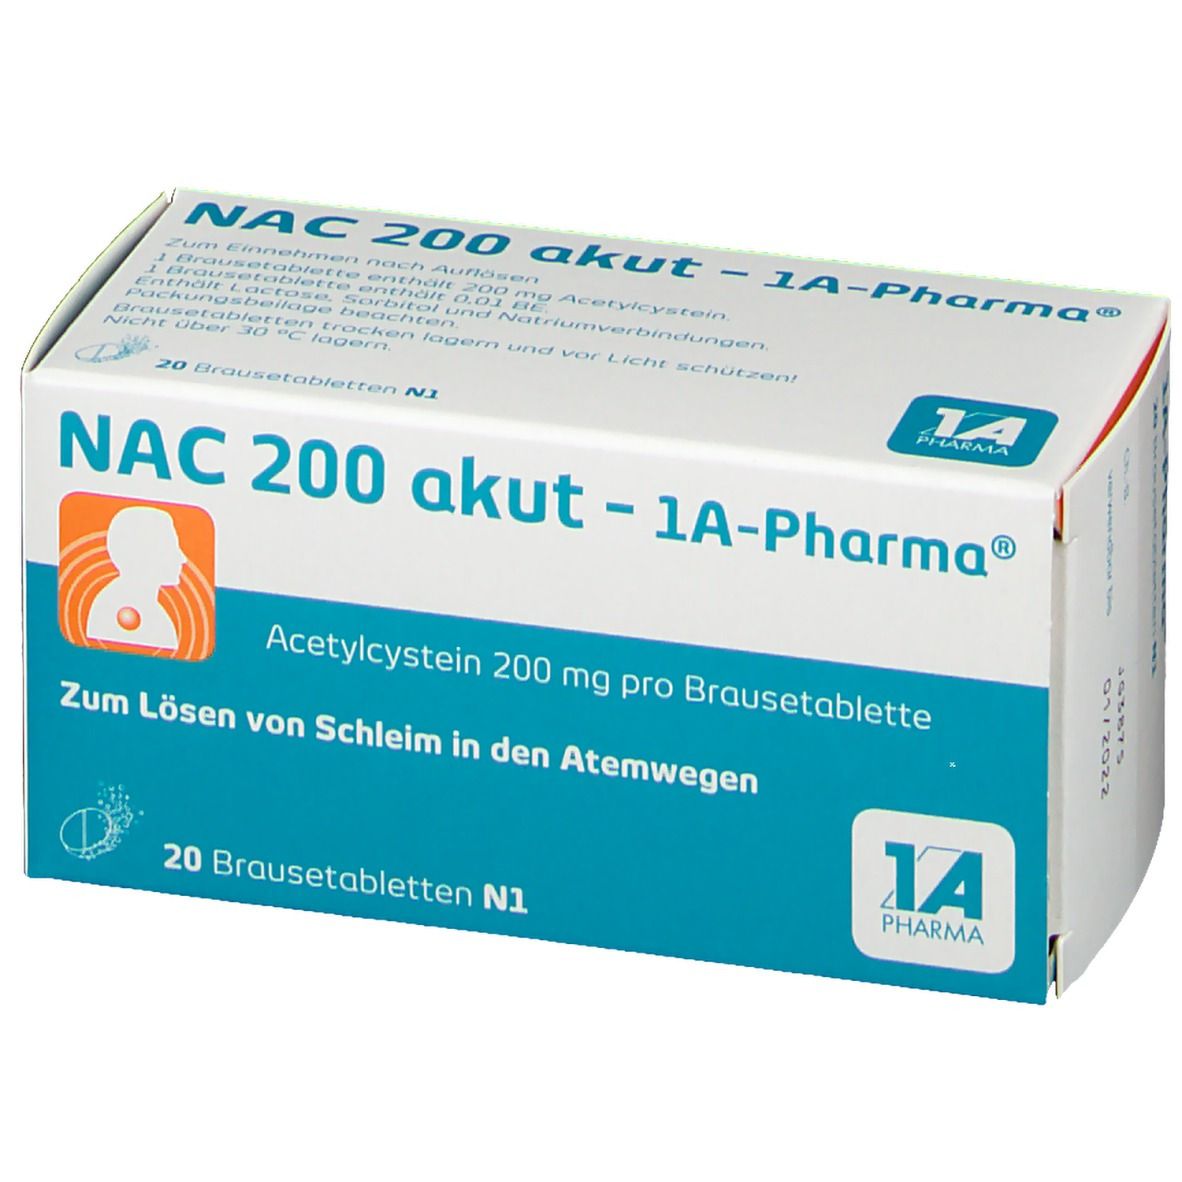 NAC 200 akut - 1A-Pharma®